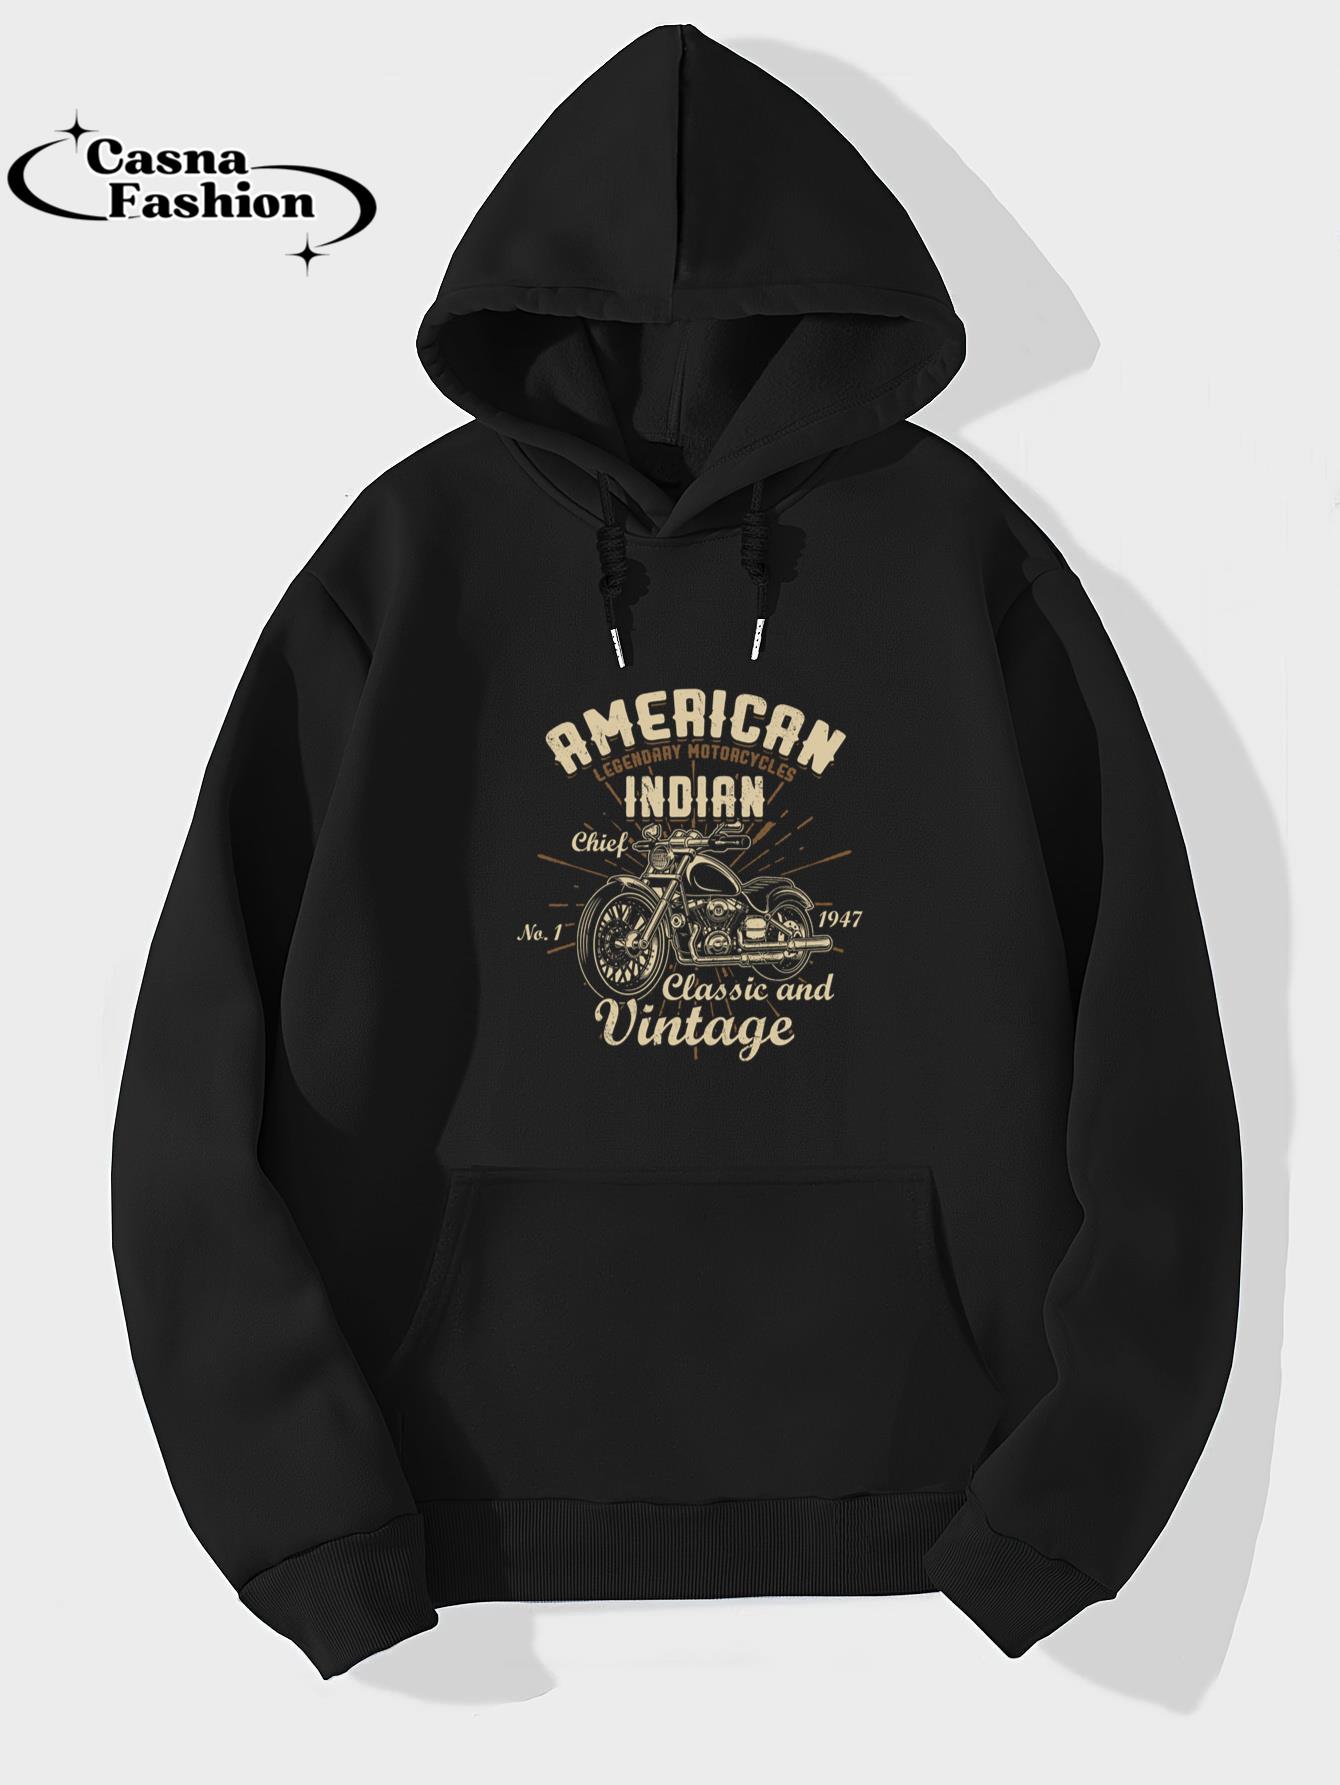 casnafashion_Hoodie_Retro Vintage American Motorcycle Indian for Old Biker Sweatshirt_hoodie_black hoodie